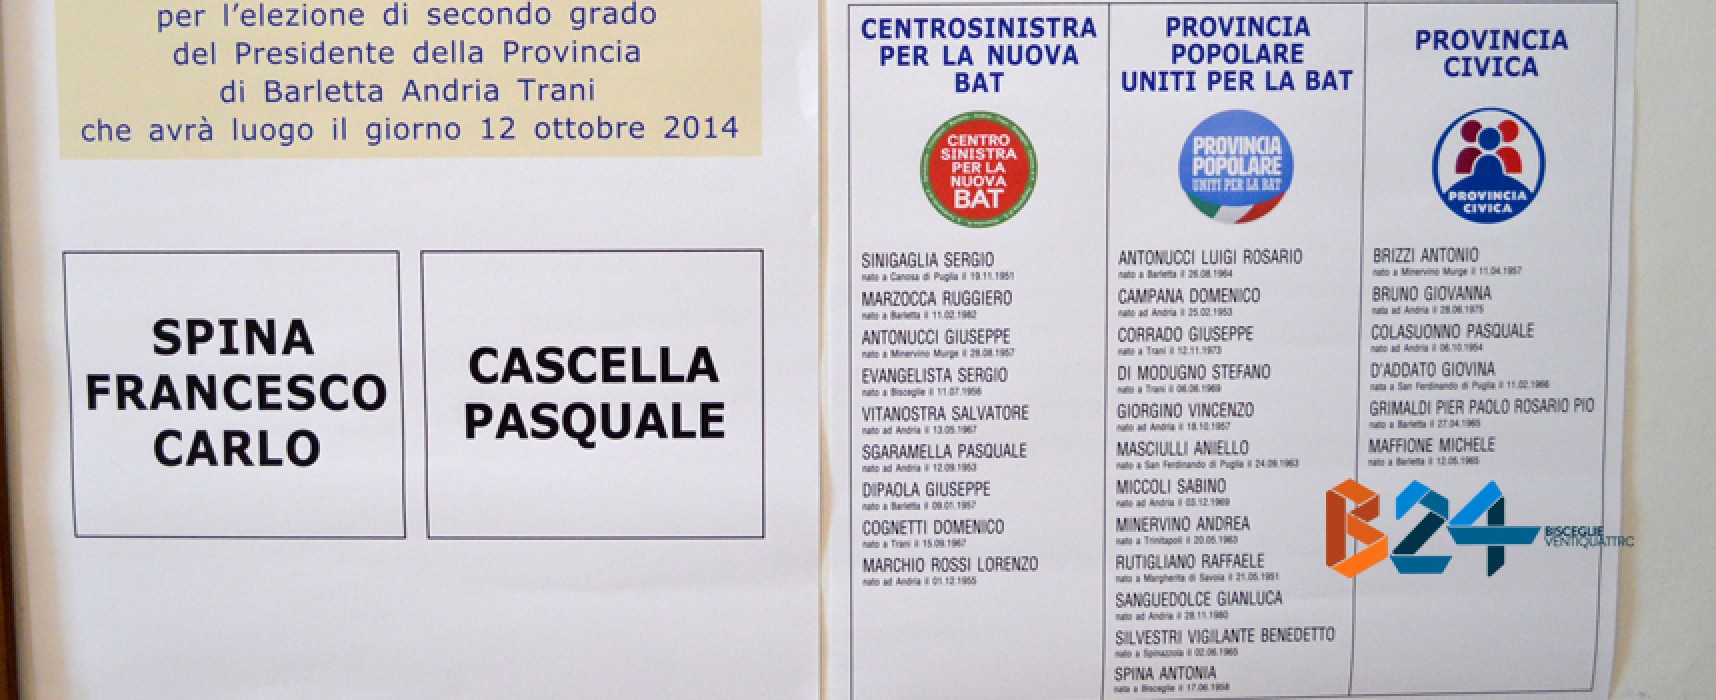 Elezioni provinciali, urne aperte oggi dalle 8 alle 20: modalità di voto e cosa cambierà